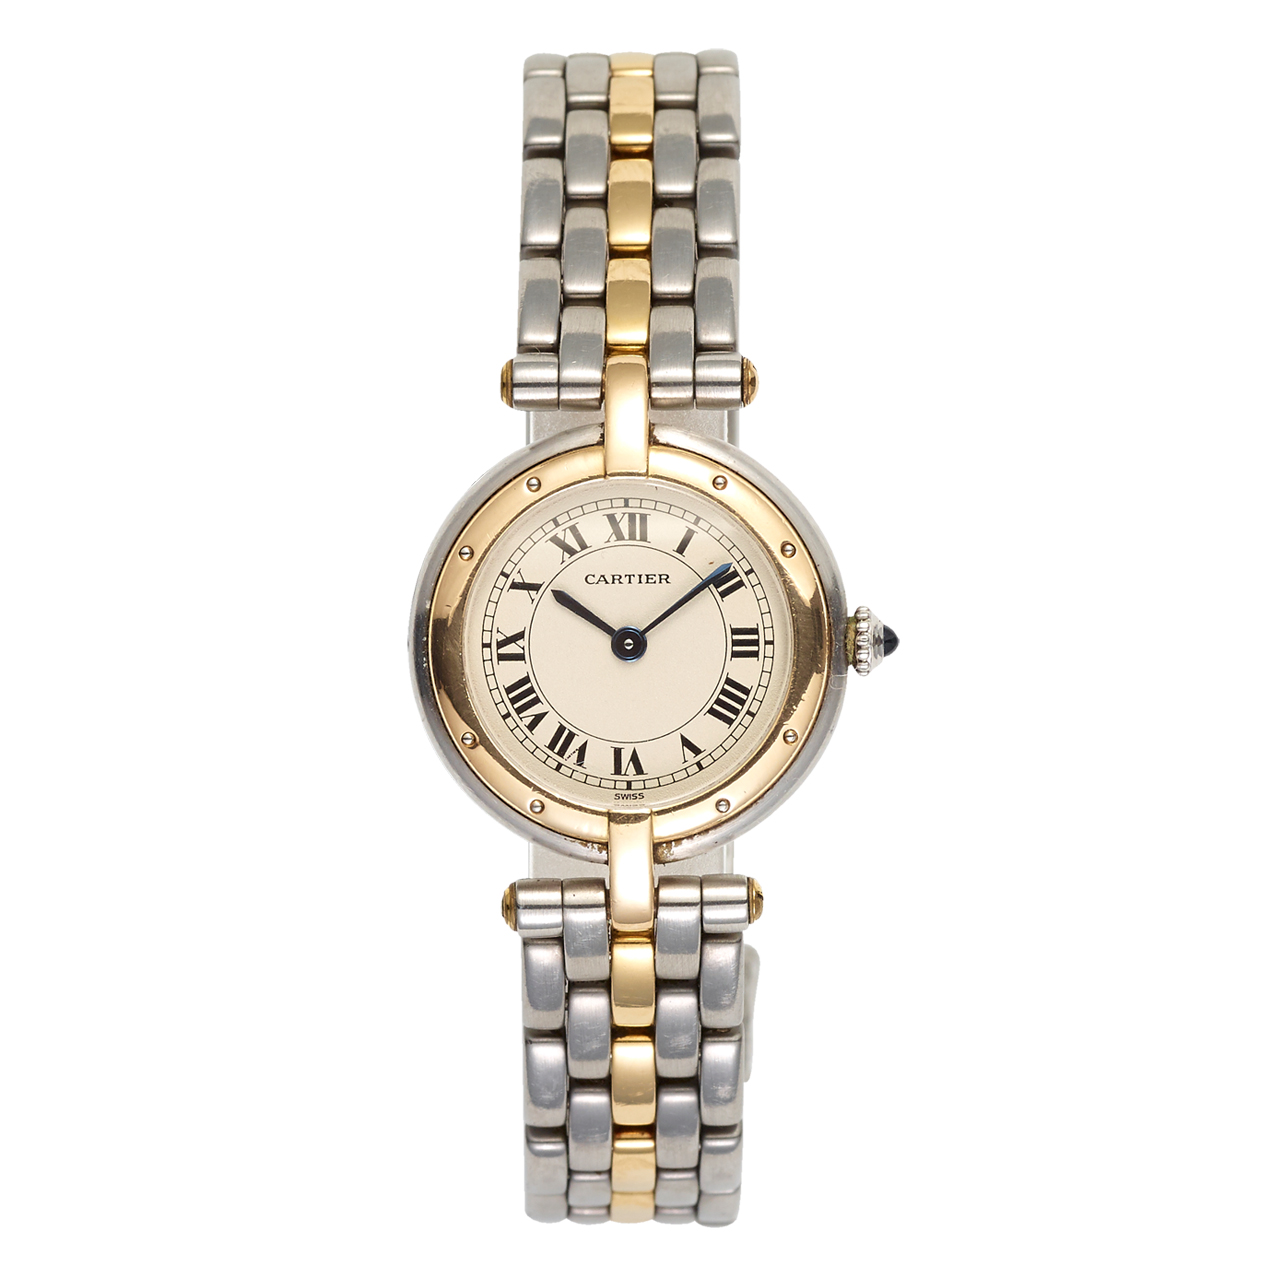 Reklame den første Gæstfrihed Cartier ur i stål & amp; 18kt guld — Klaus Rygaard Ure & Smykker